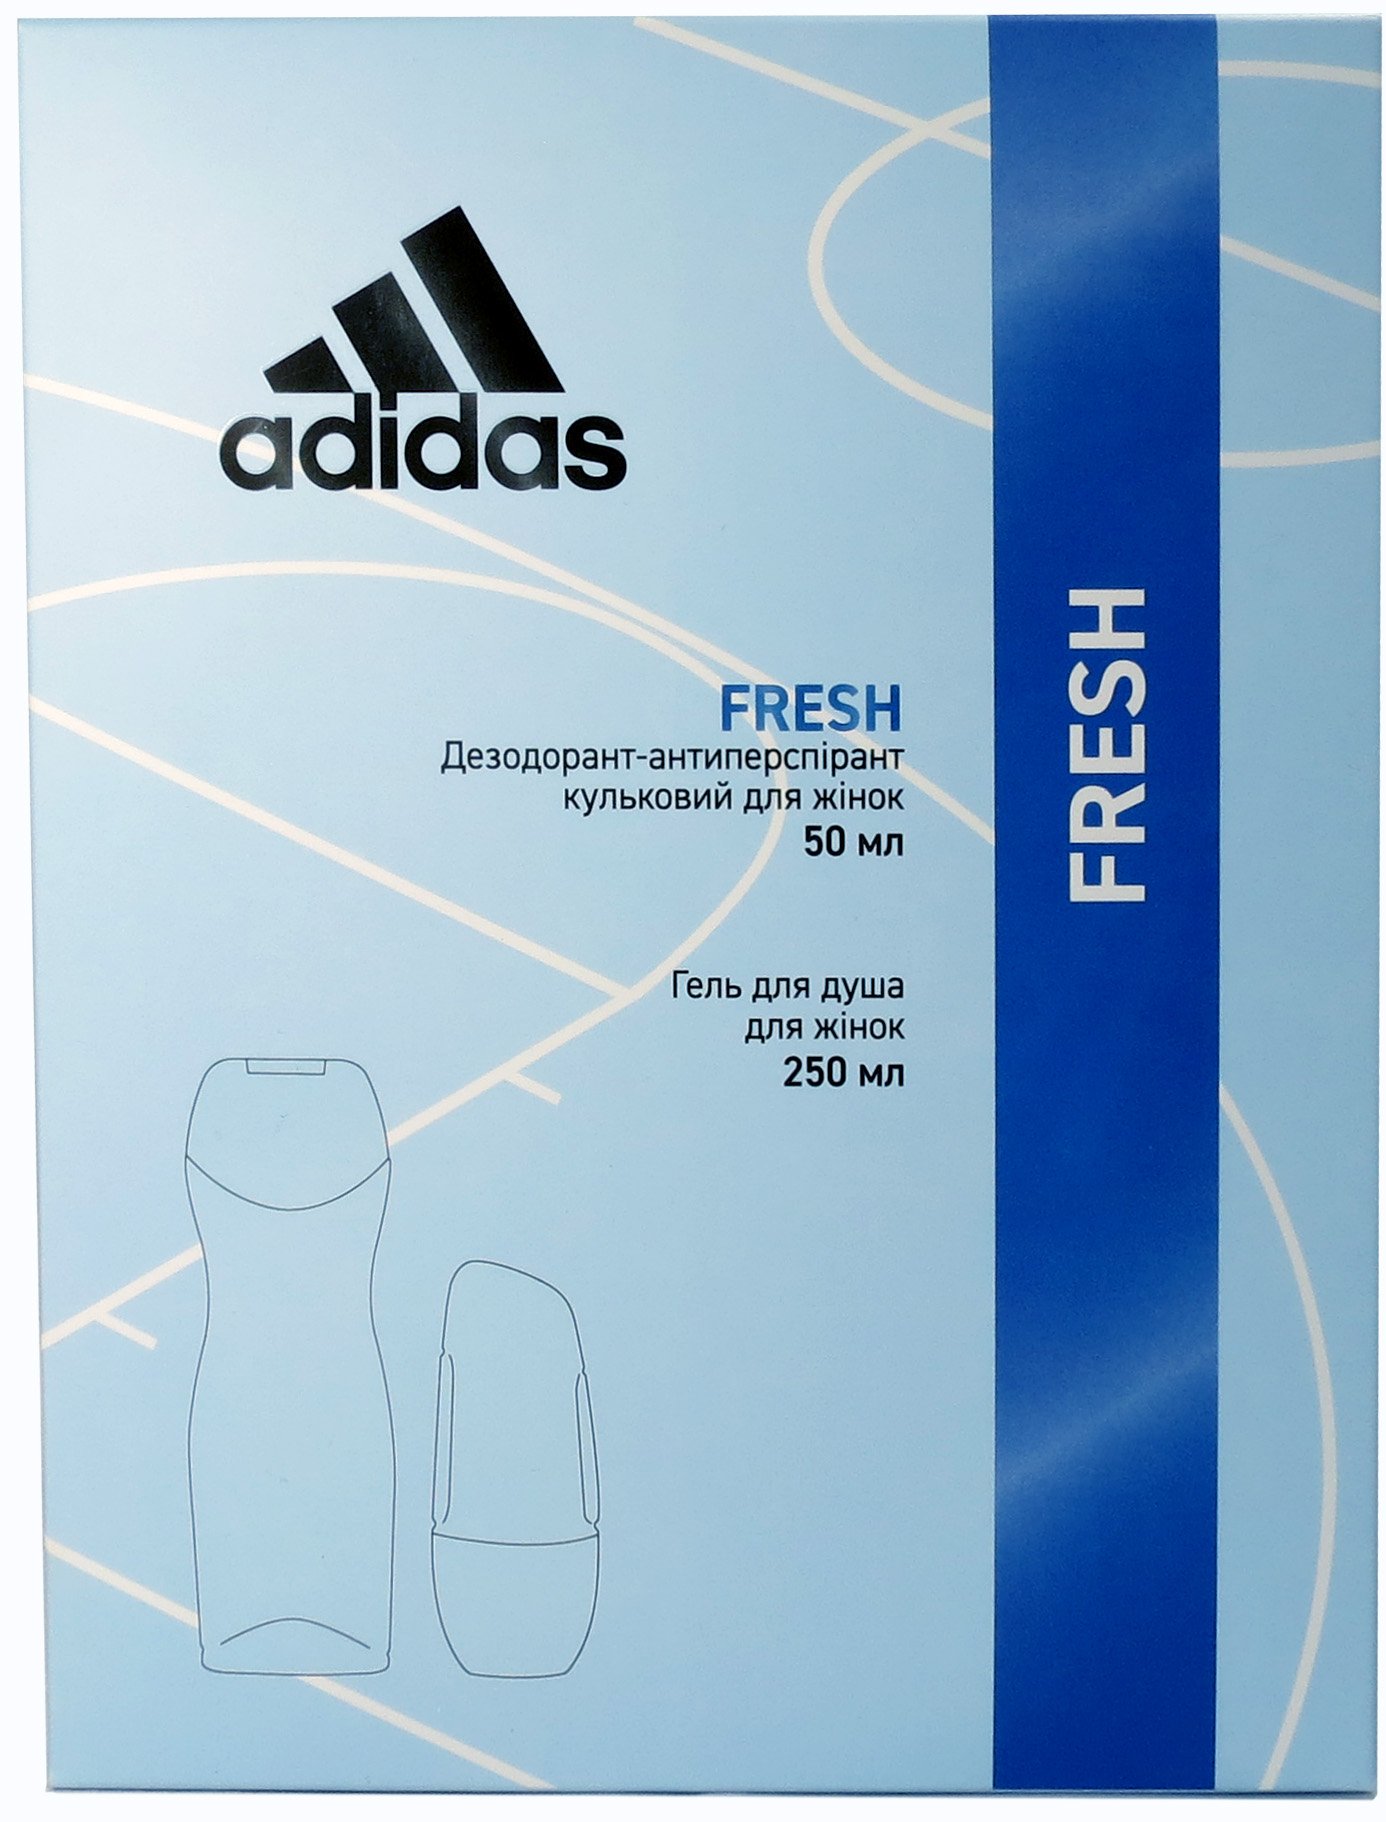 Набір для жінок Adidas 2020 Дезодорант-антиперспірант Fresh, 50 мл + Гель для душа, 250 мл - фото 2